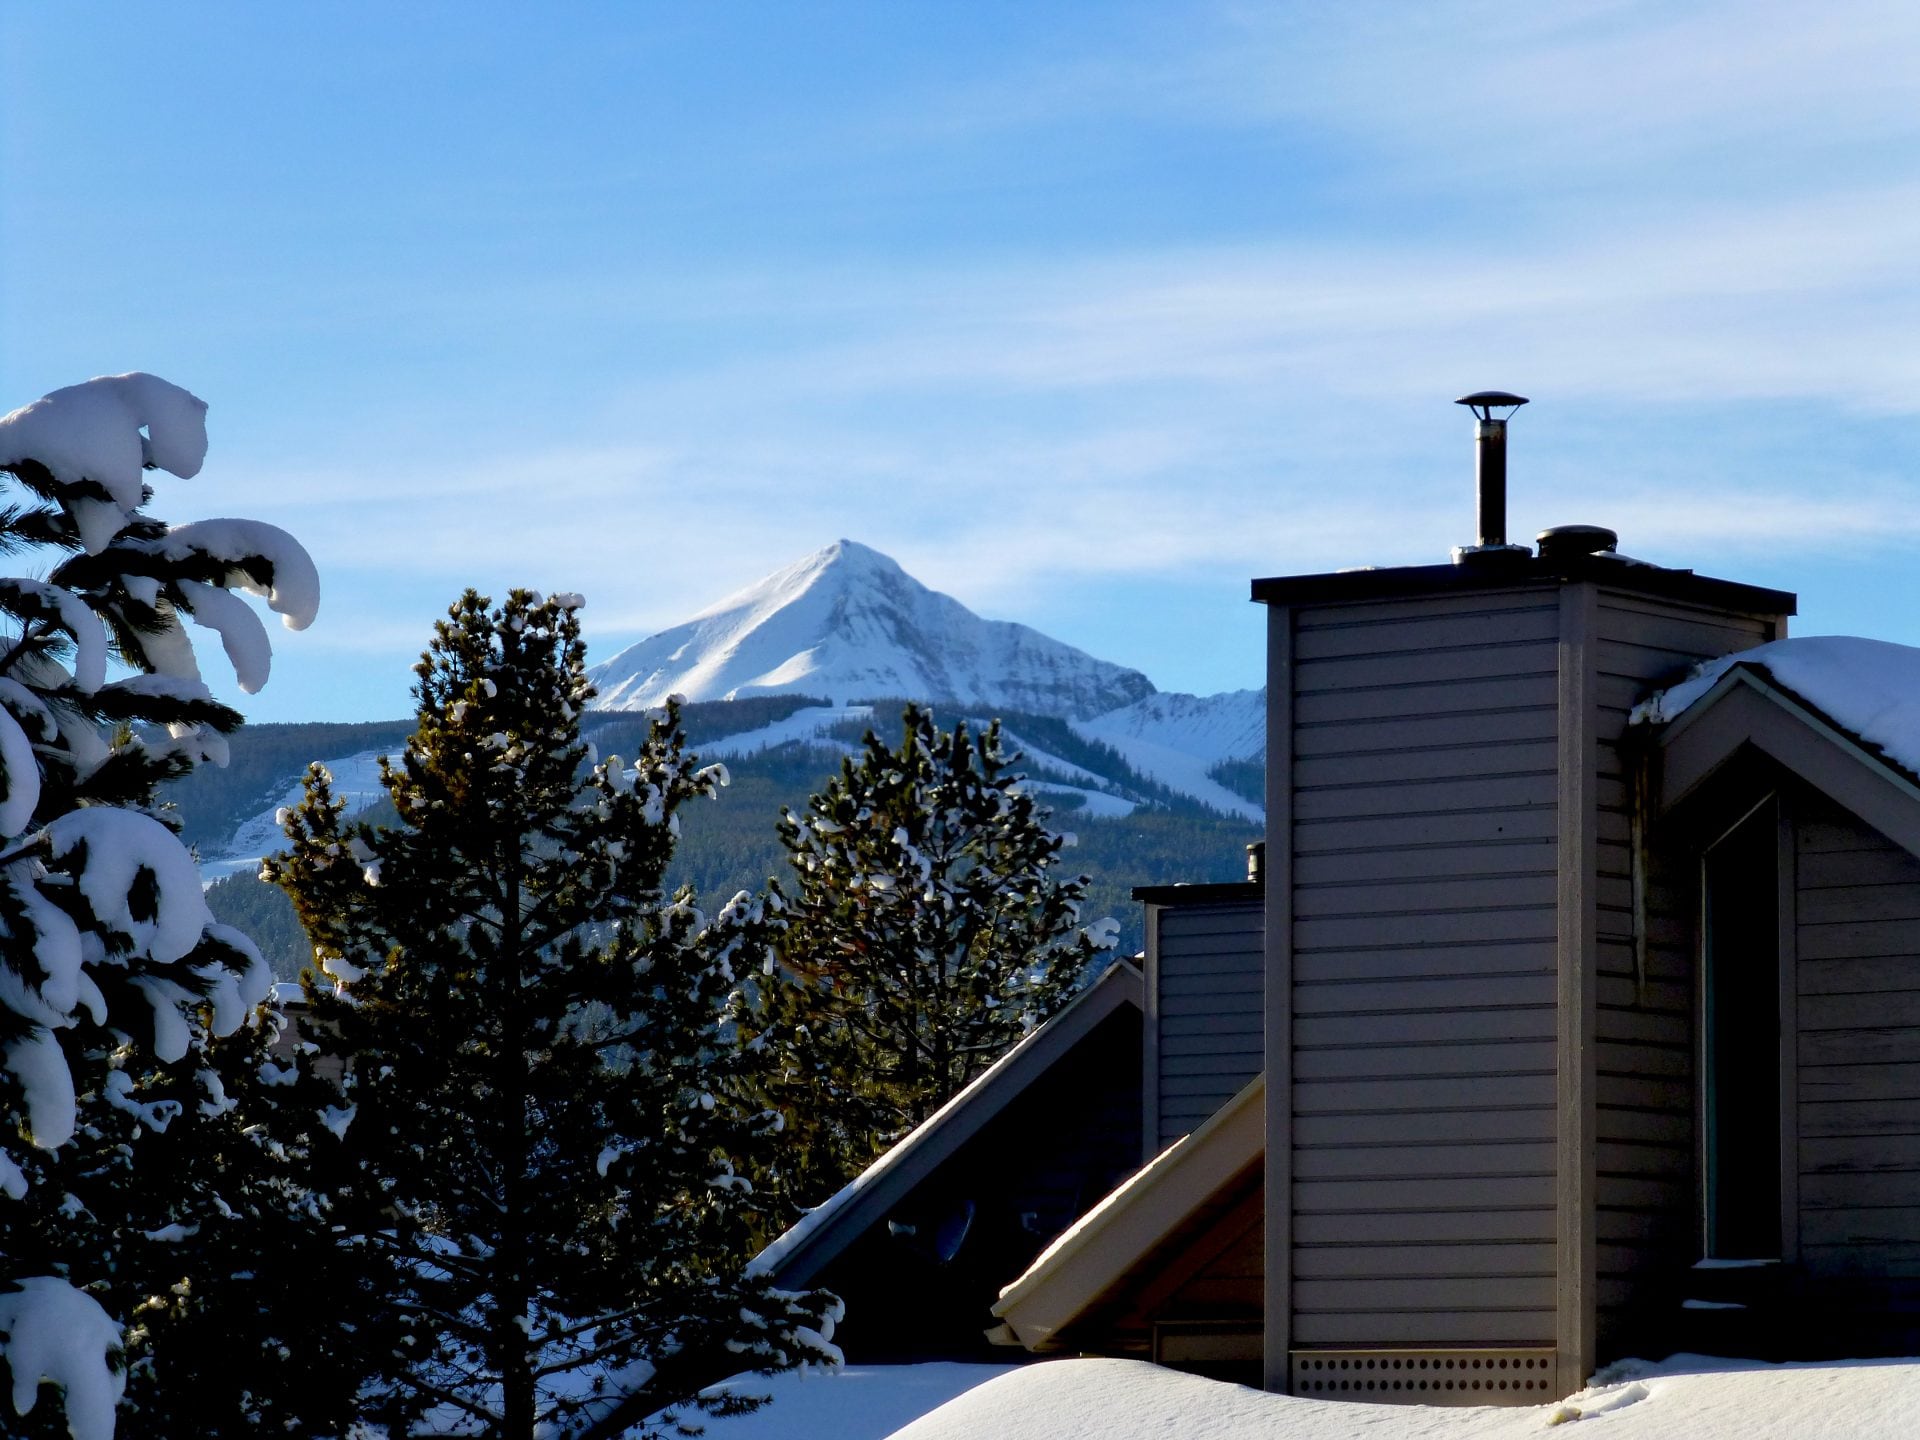 ski resort image